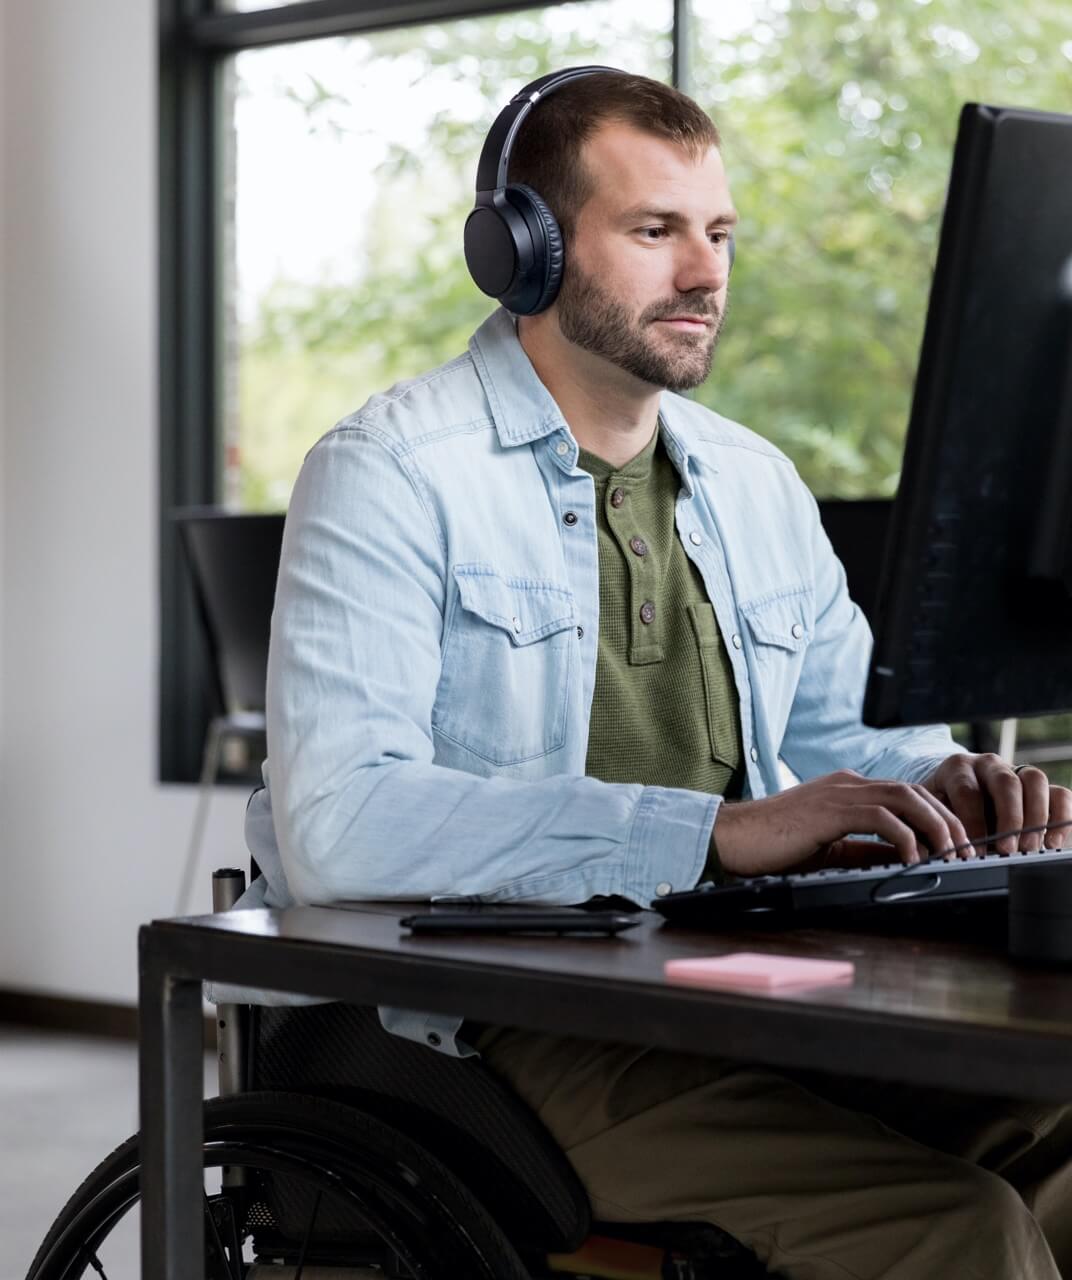 Un homme en fauteuil roulant est assis et travaille sur son ordinateur. Il porte une barbe et des écouteurs. Il tape sur le clavier et semble travailler dans un bureau.